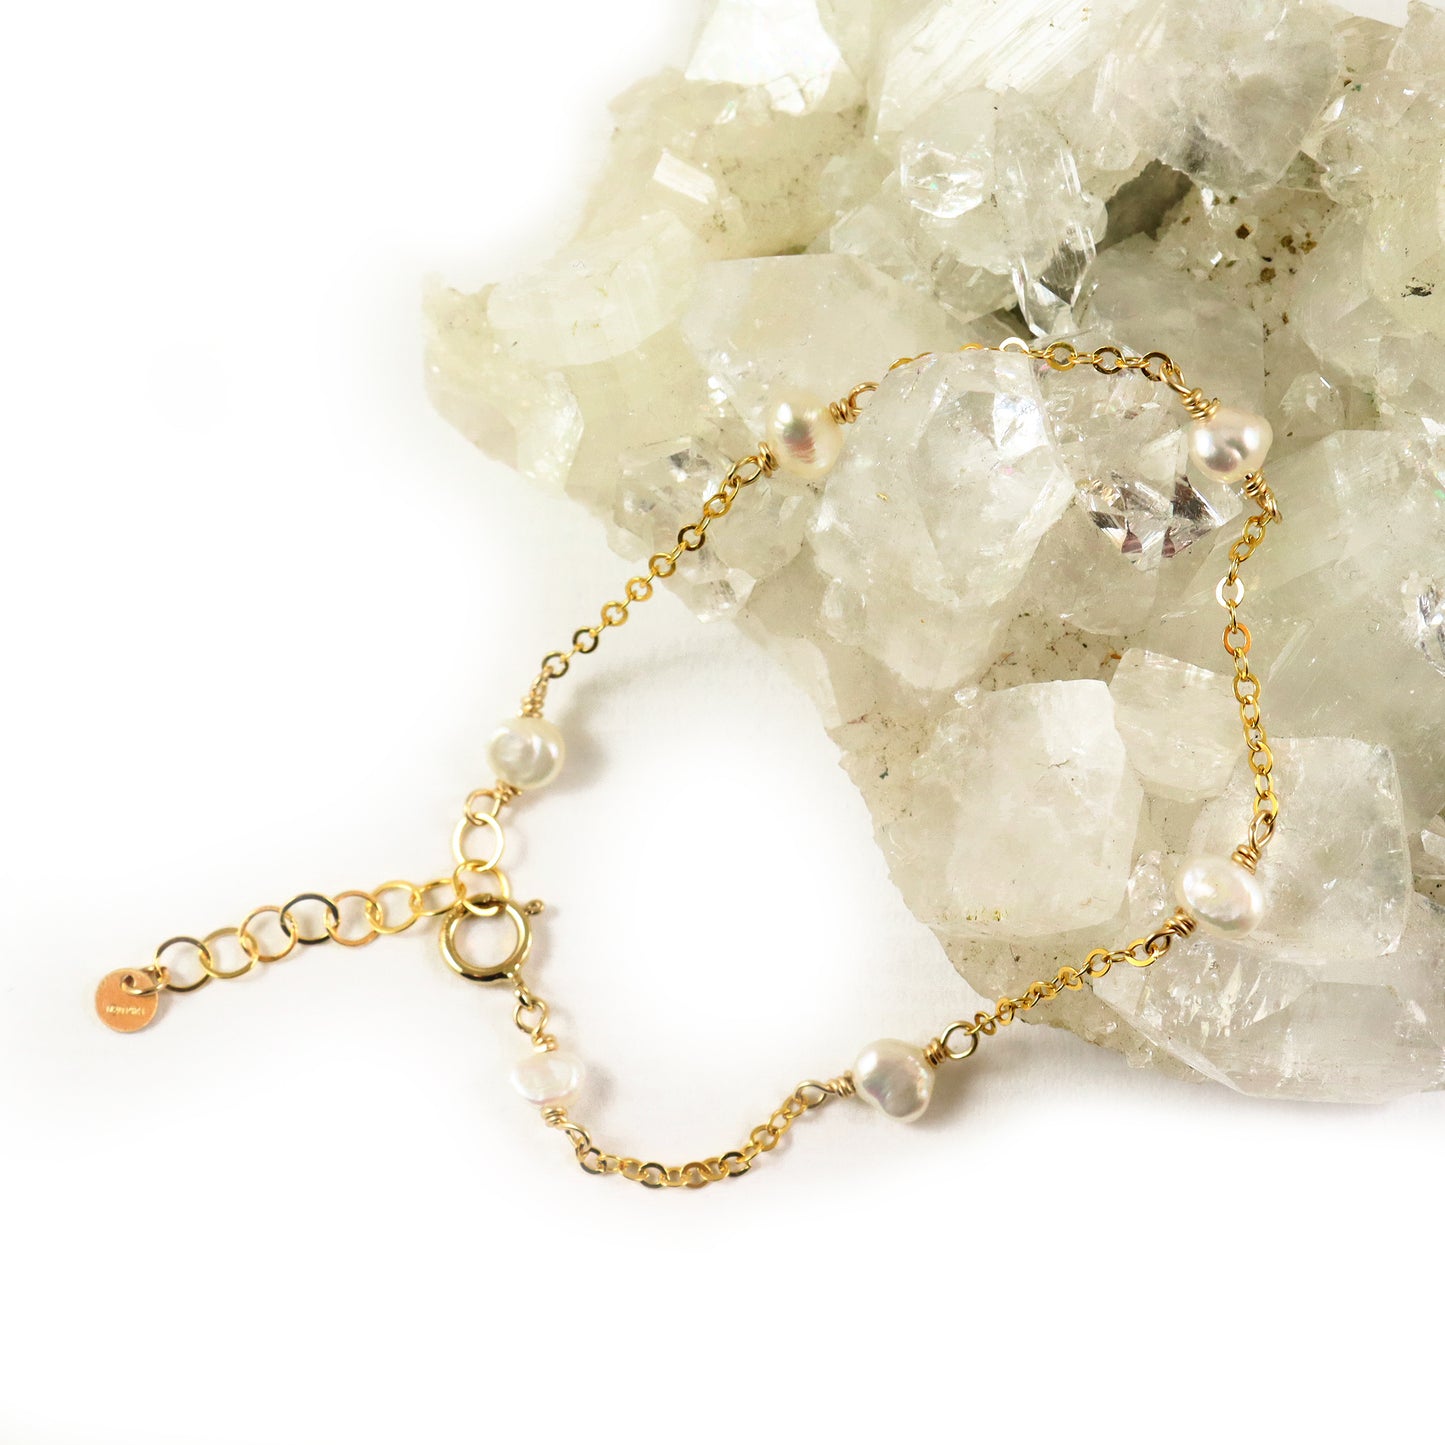 White Pearl Gold Bracelet